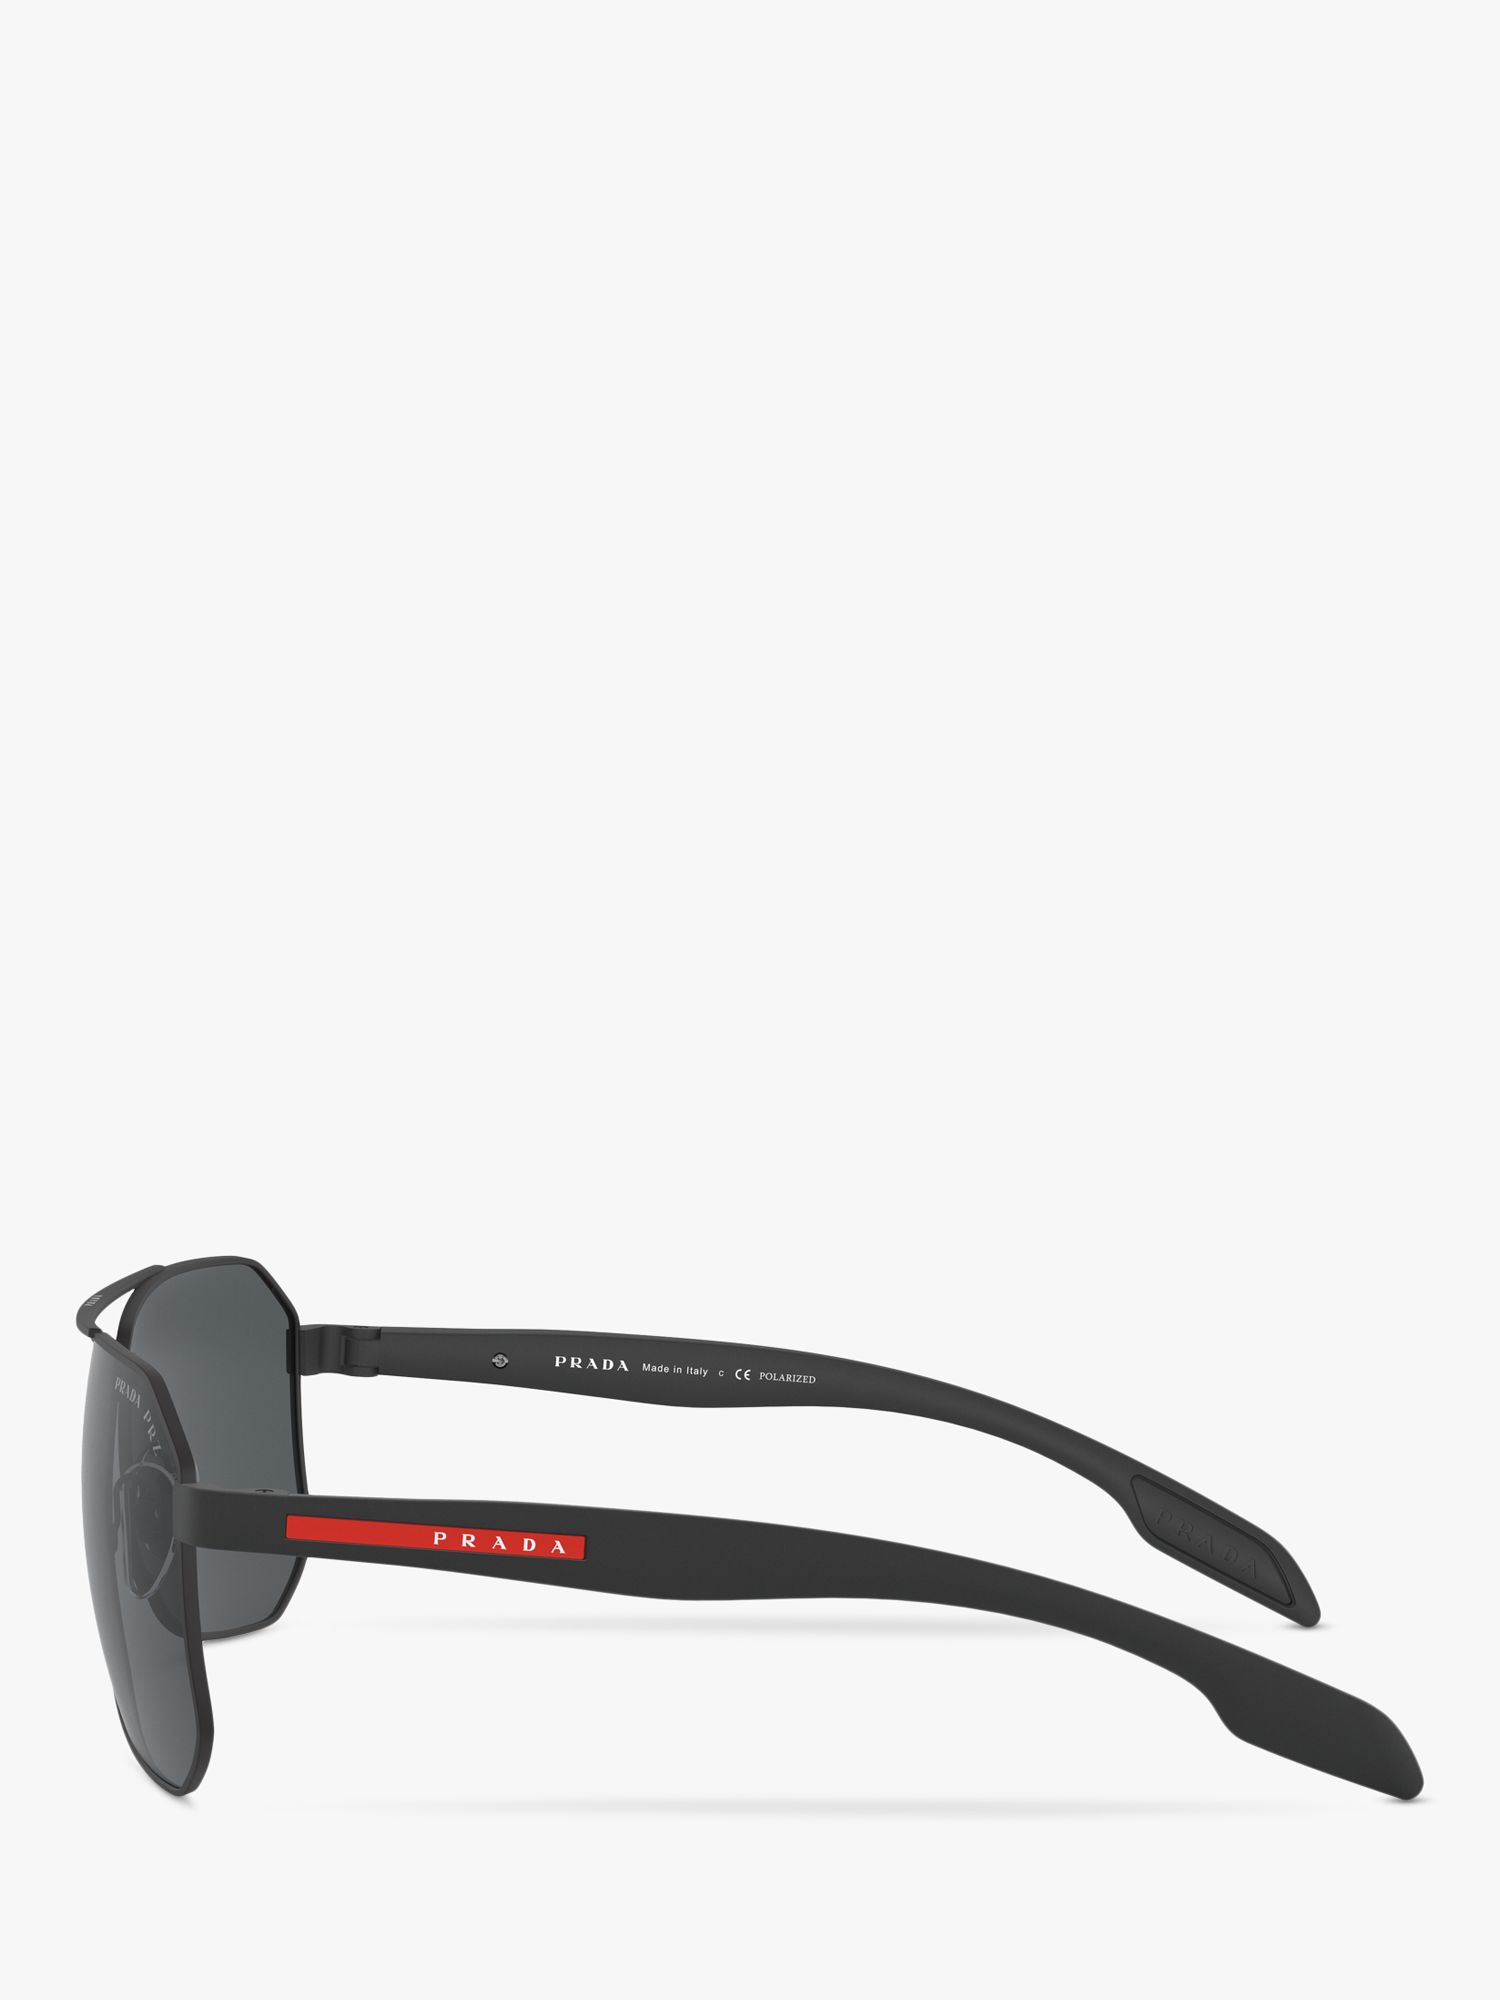 Prada Linea Rossa PS 51VS Men's Polarised Rectangular Sunglasses, Black/Grey